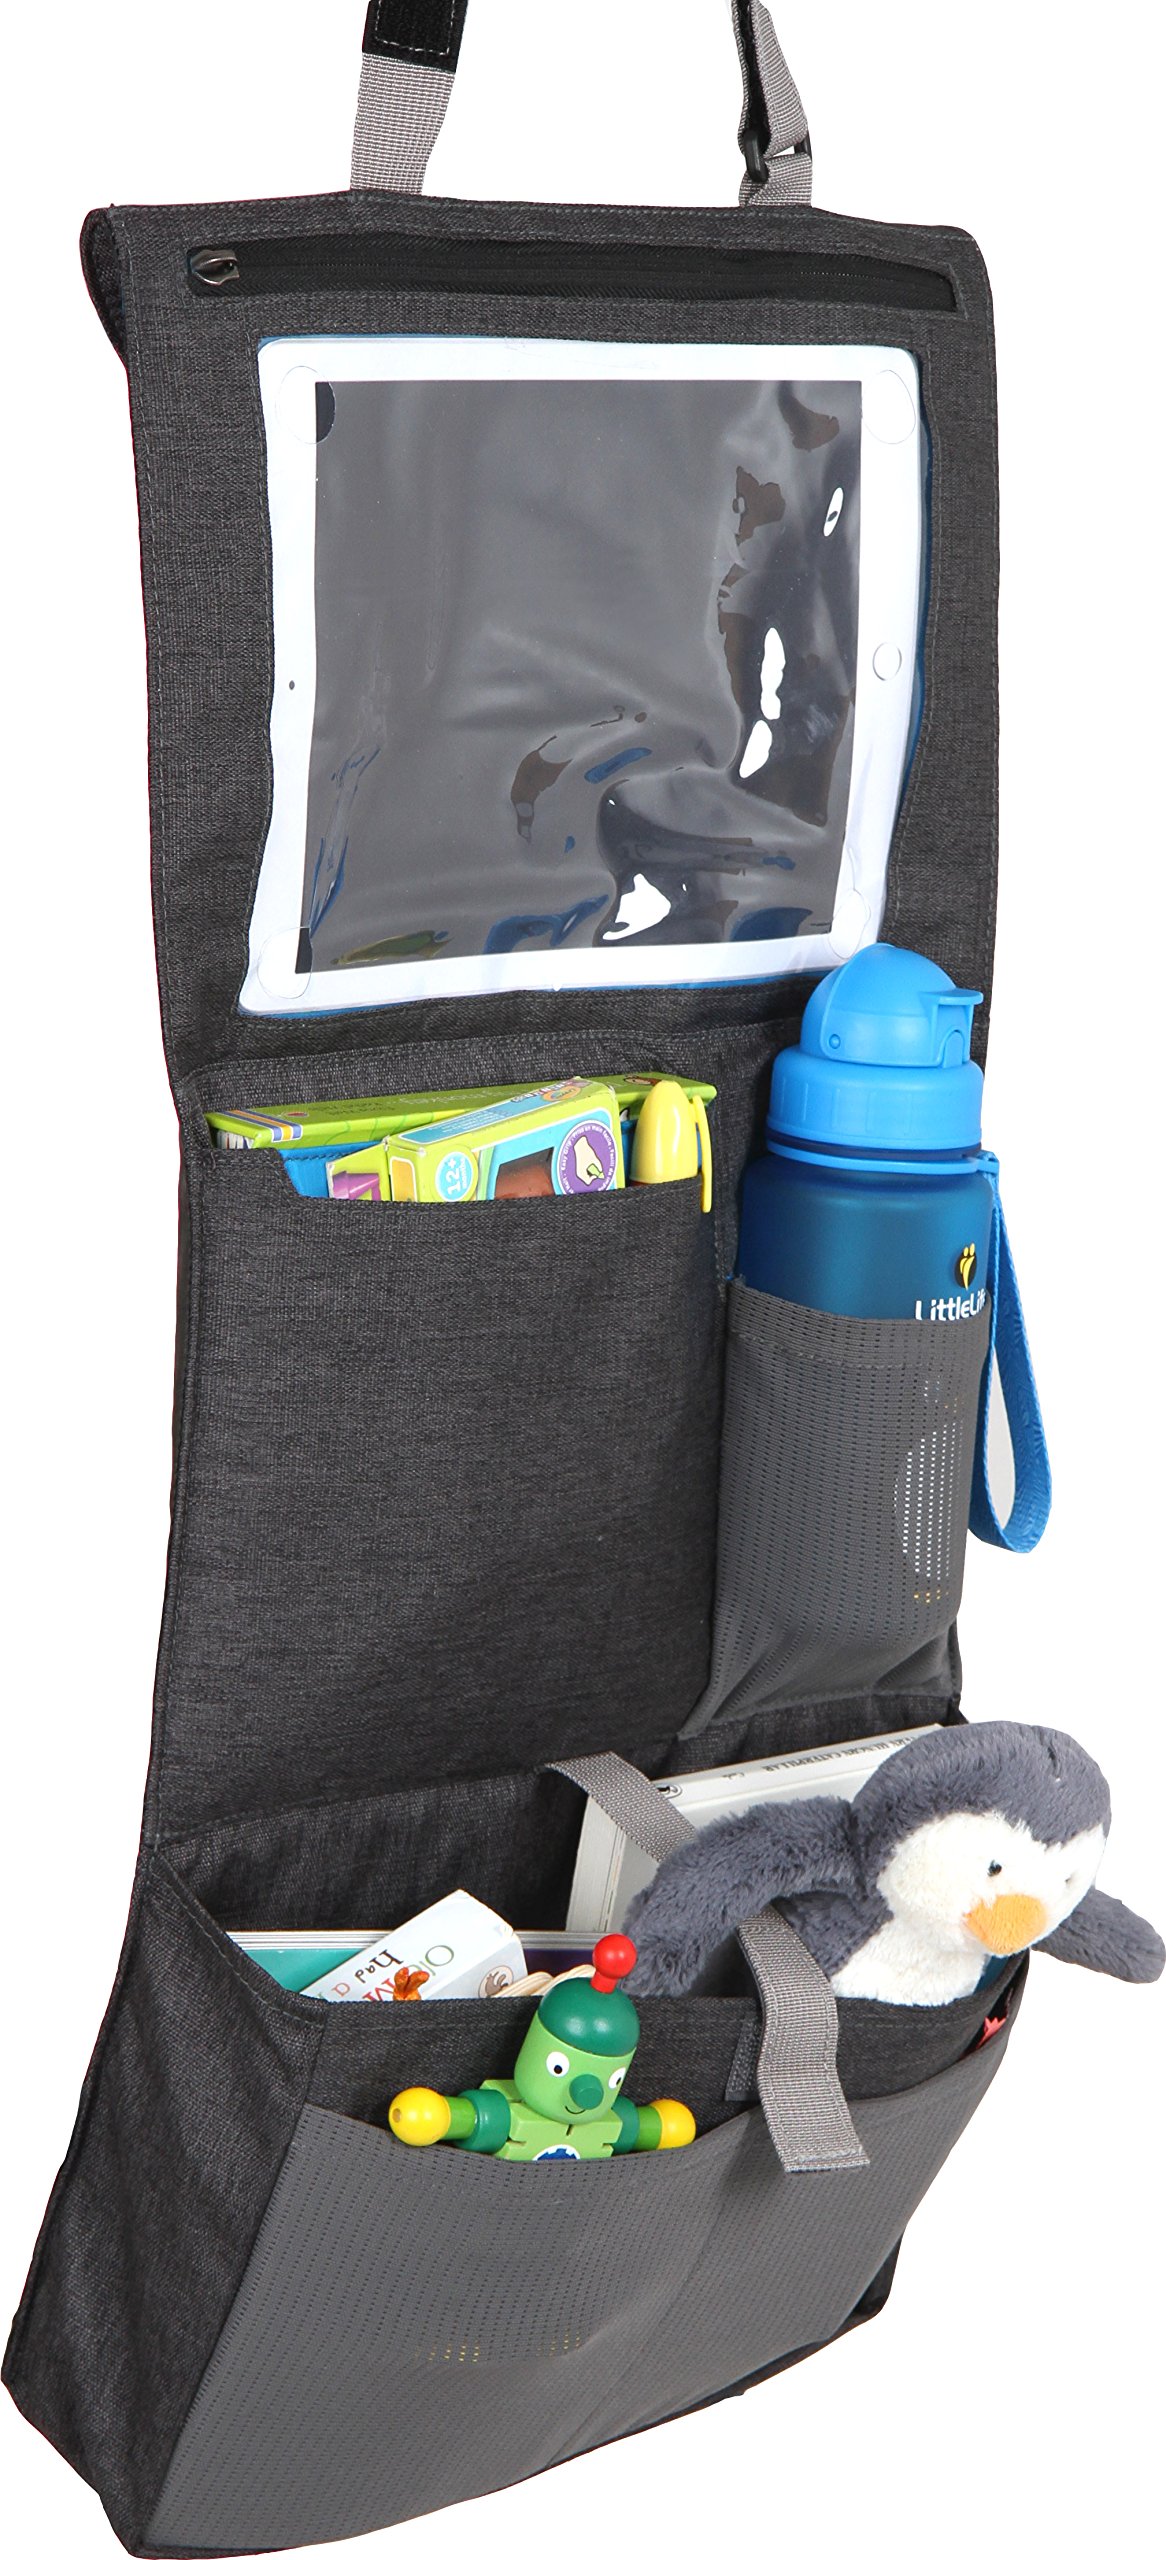 LittleLife Autositz-Organisator für Kinder im Rücksitz passt alle iPads mit Touchscreen-Fenster, mehrere Taschen für Flasche, Spielzeug Lagerung, wasserdicht Vordersitz Protector